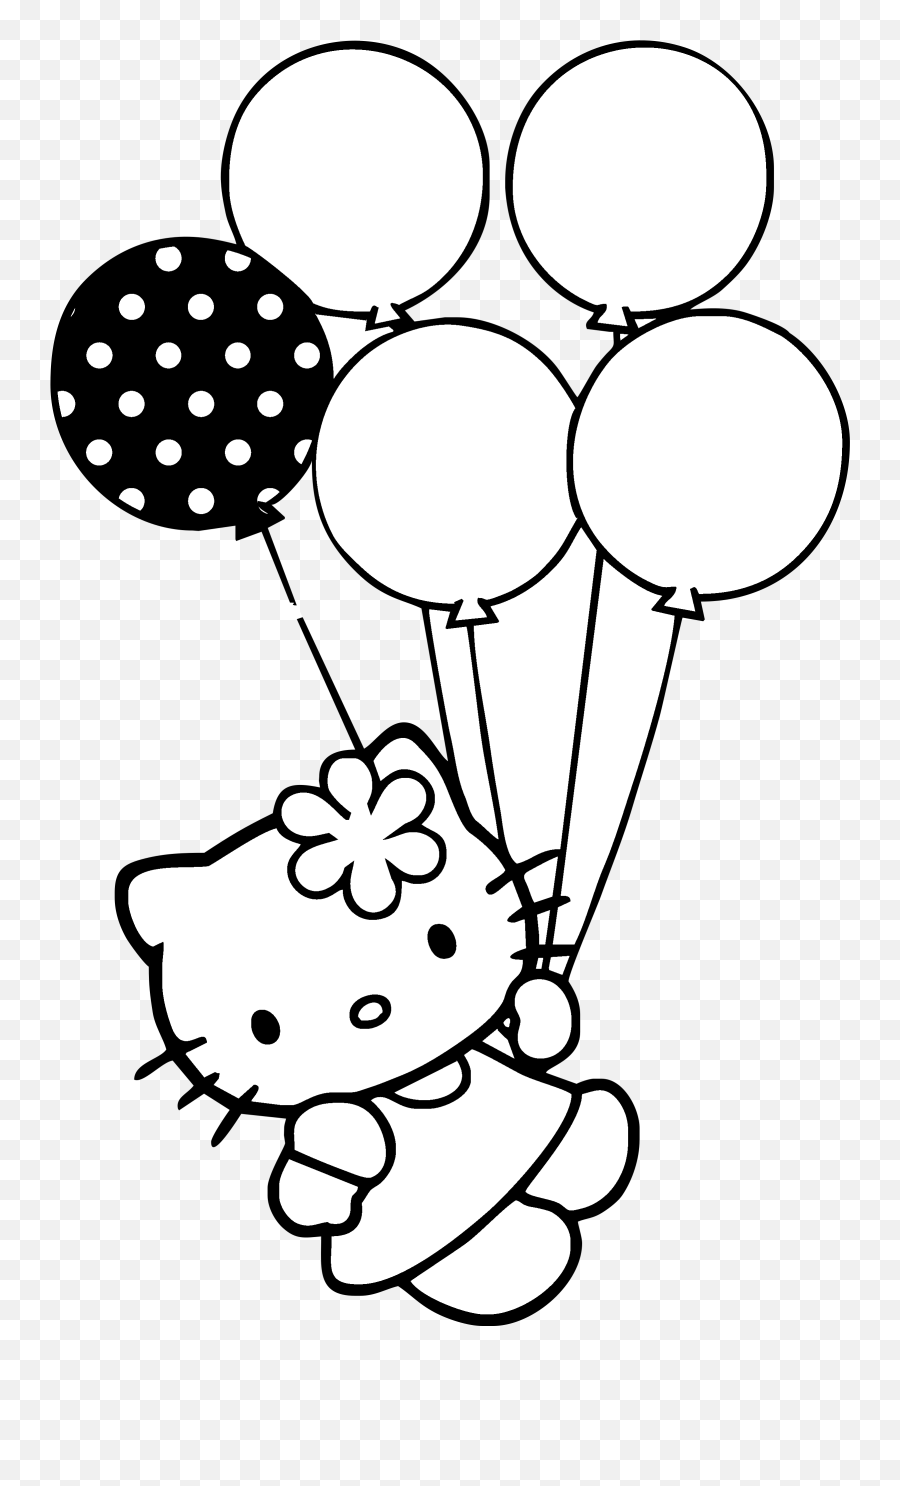 Download Hello Kitty Con Globitos Logo - Hello Kitty Clipart Black And White Emoji,Hello Kitty Logo